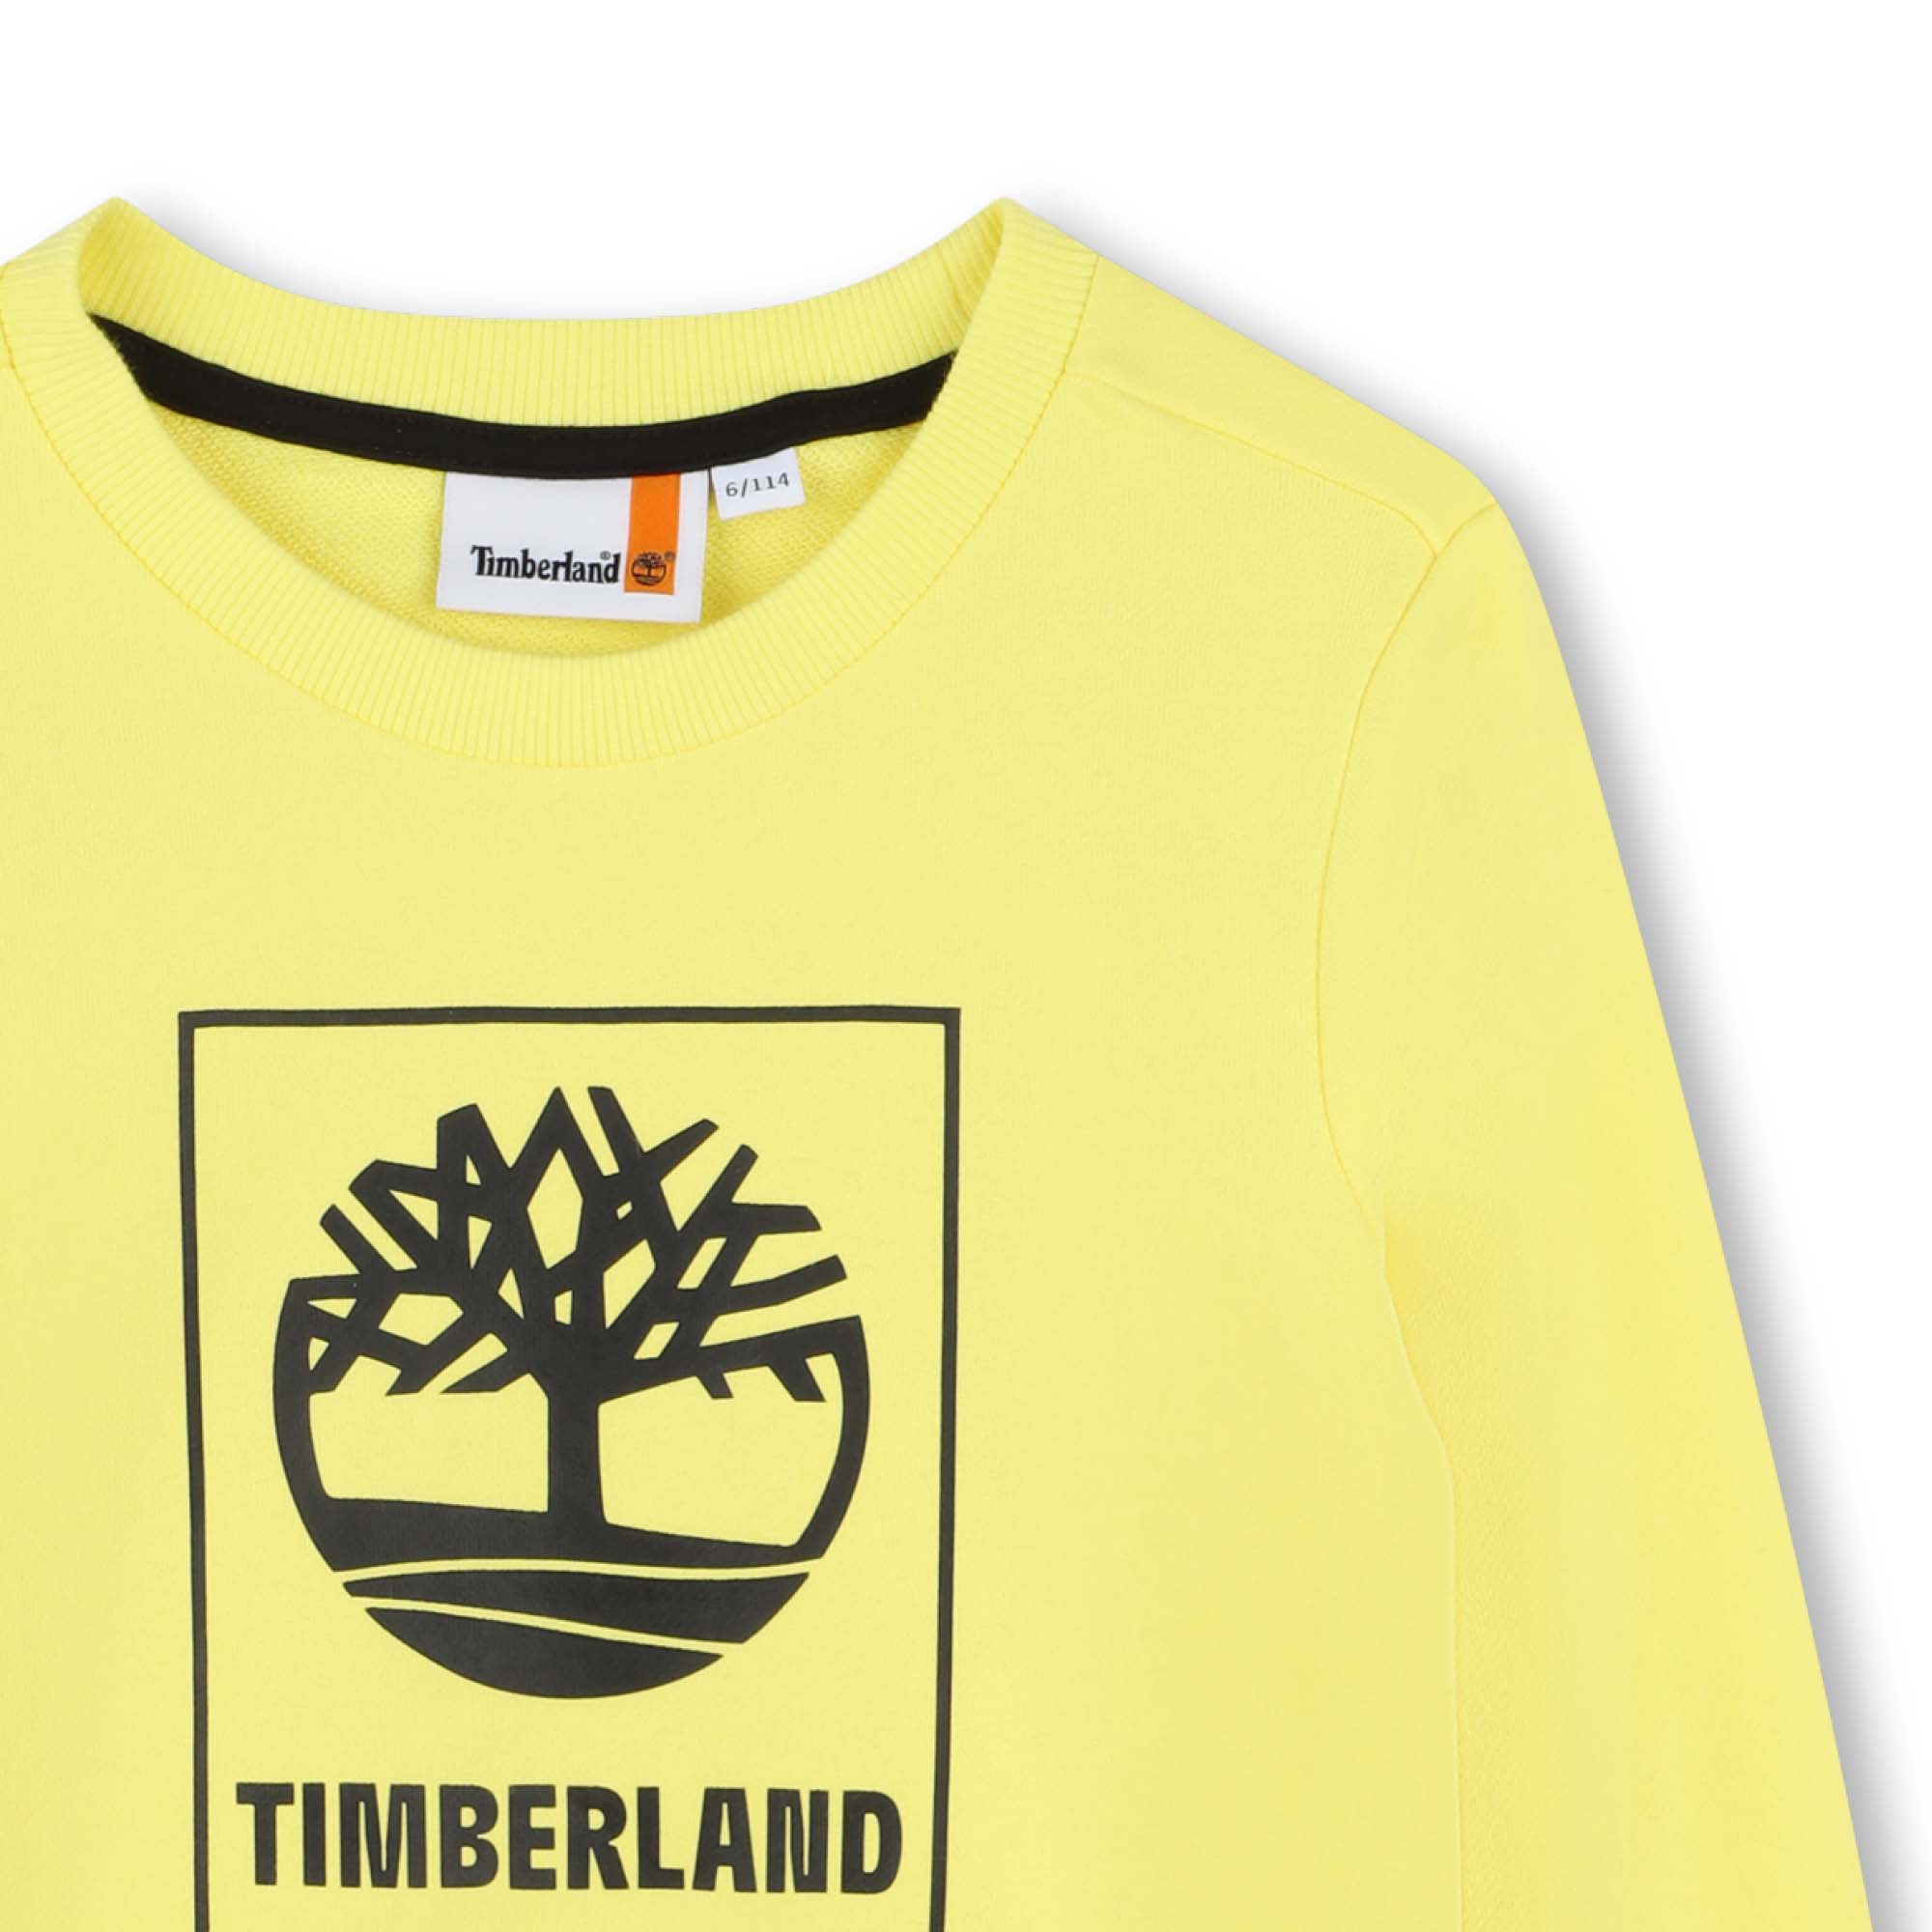 Sweatshirt mit Motiv TIMBERLAND Für JUNGE